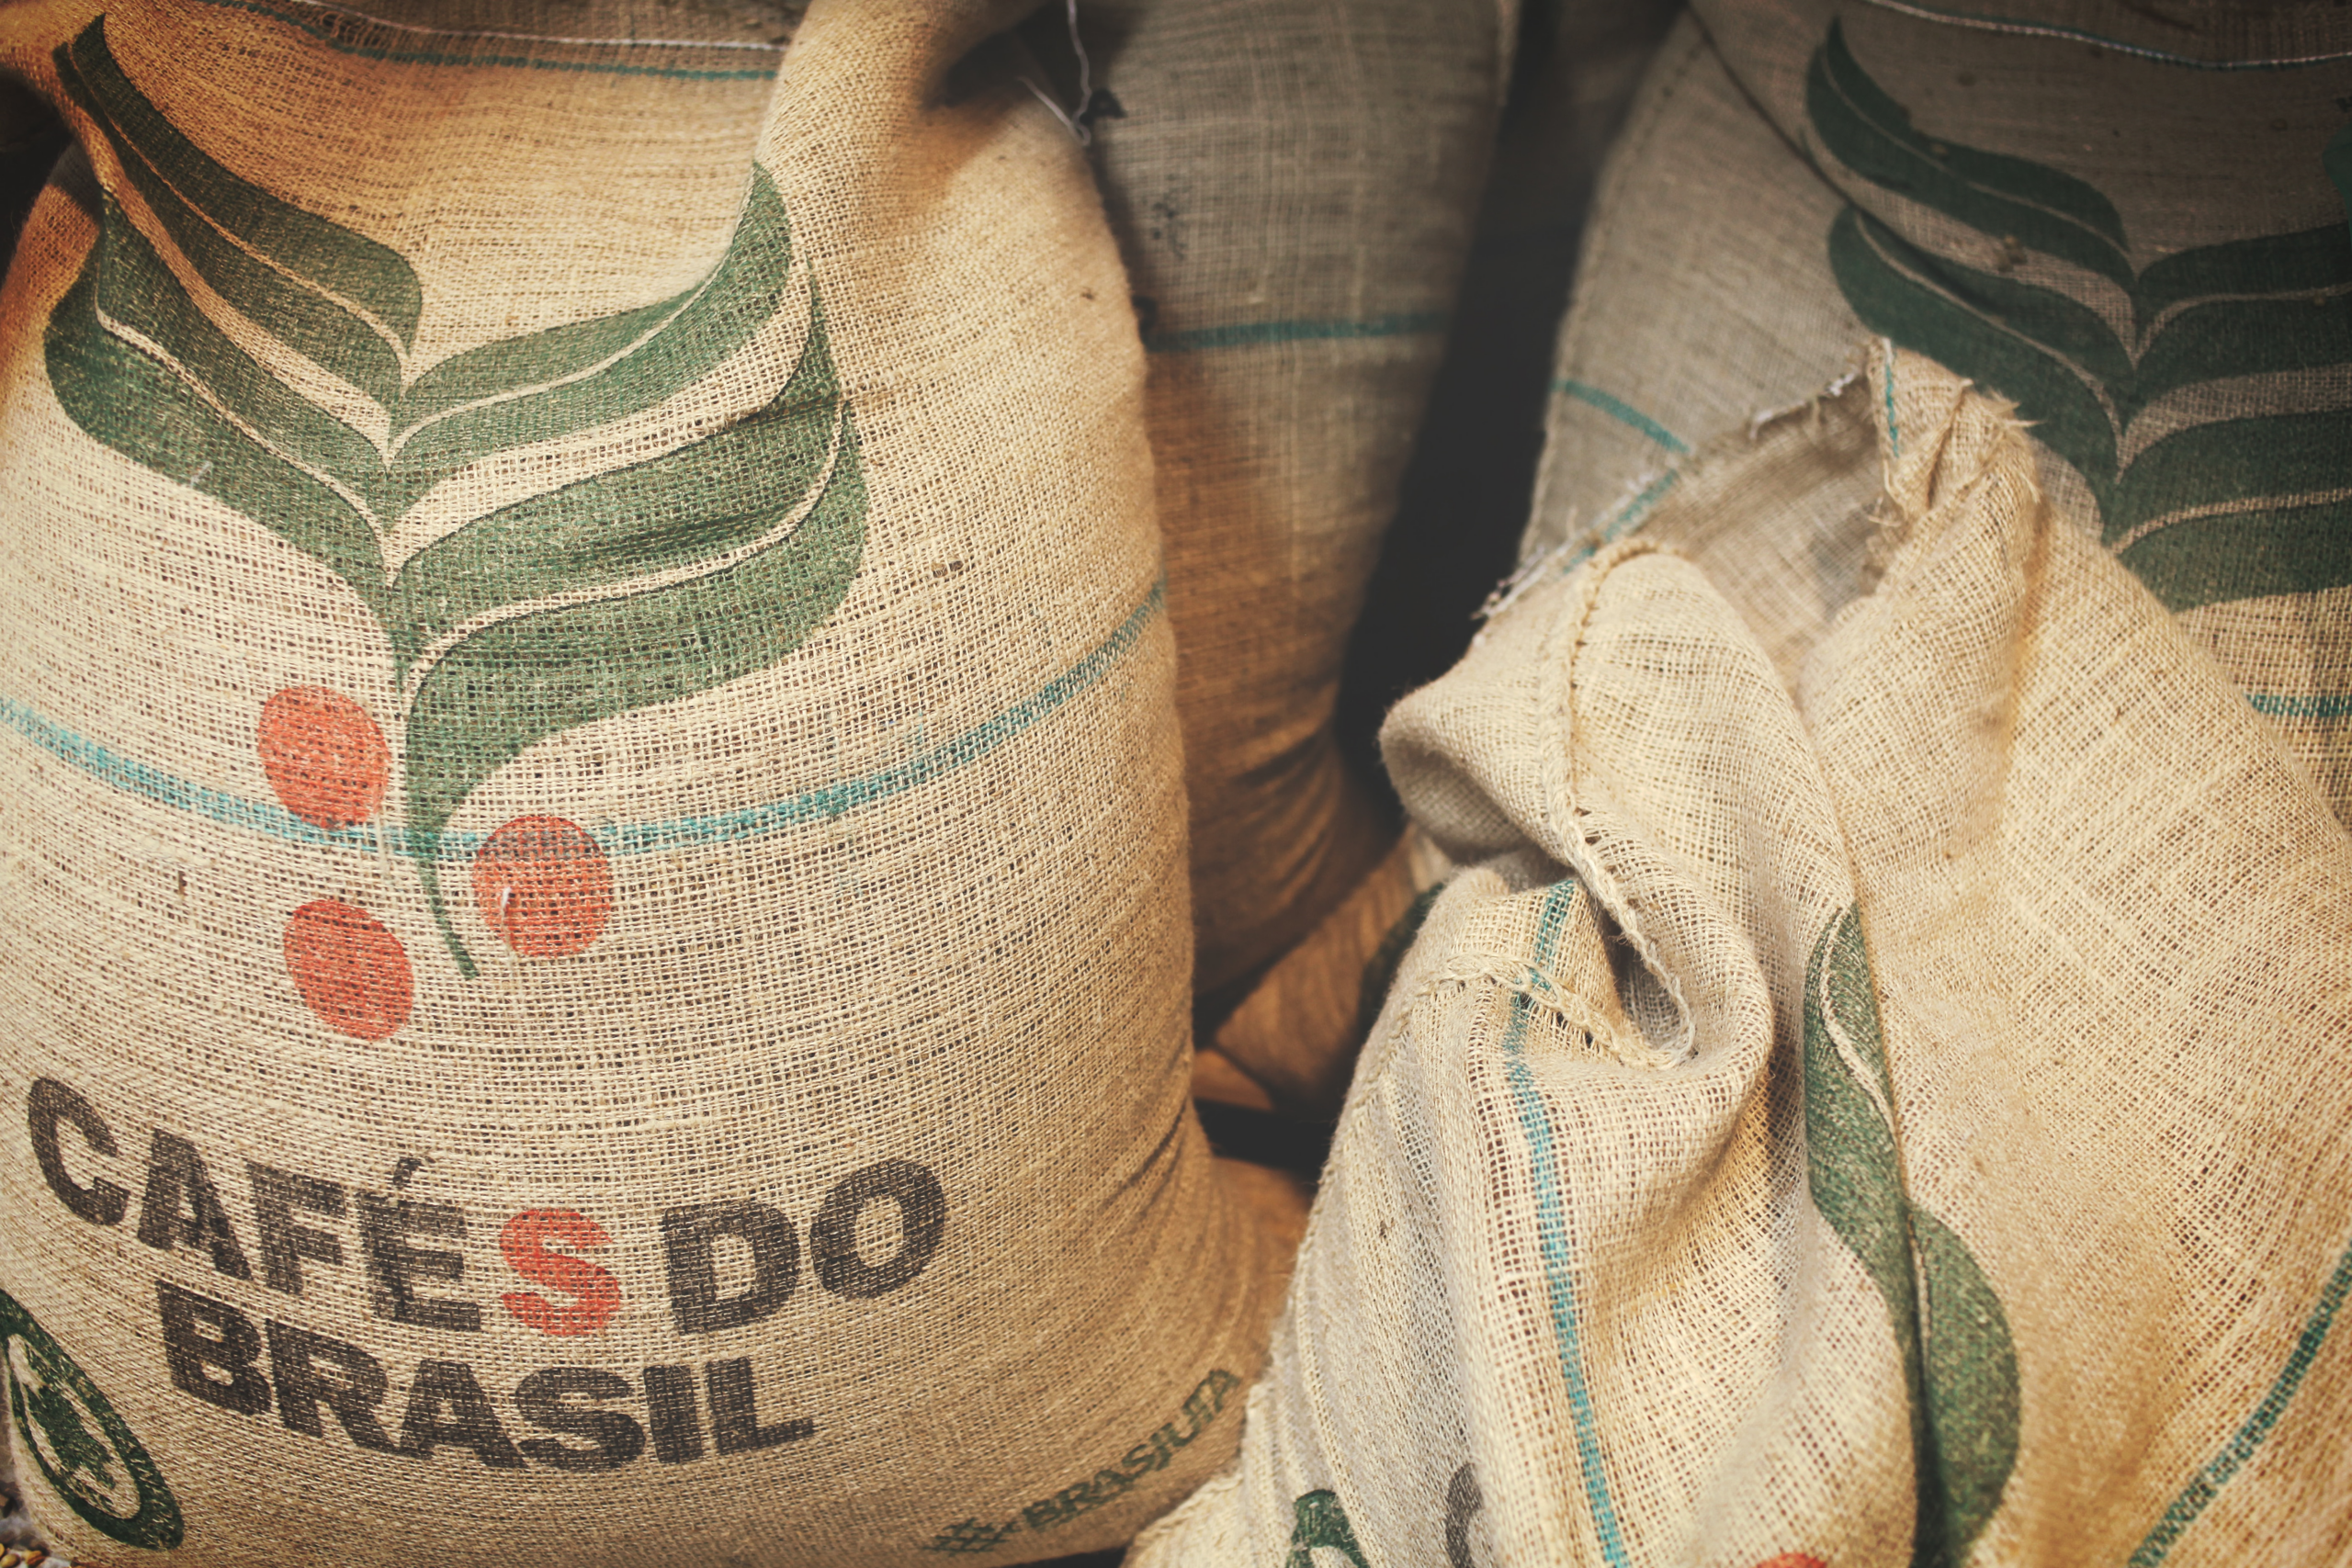 USDA projicerar en global kaffeproduktionen för säsongen 2023/2024 till 174,34 miljoner säckar, vilket motsvarar en tillväxt på 2,5 procent jämfört med föregående cykel. I absoluta tal, ett framsteg på 4,32 miljoner säckar, drivet av arabicas produktionsvinster, särskilt i Brasilien. Till skillnad från arabica måste robusta minska sin produktion. Den förväntade förbättringen för Vietnamskörden är otillräcklig för att kompensera problemen i andra viktiga robusta ursprung som Indonesien och Brasilien. Denna produktionsjustering stöder det stigande priset på robusta kaffe och rallyt i London.